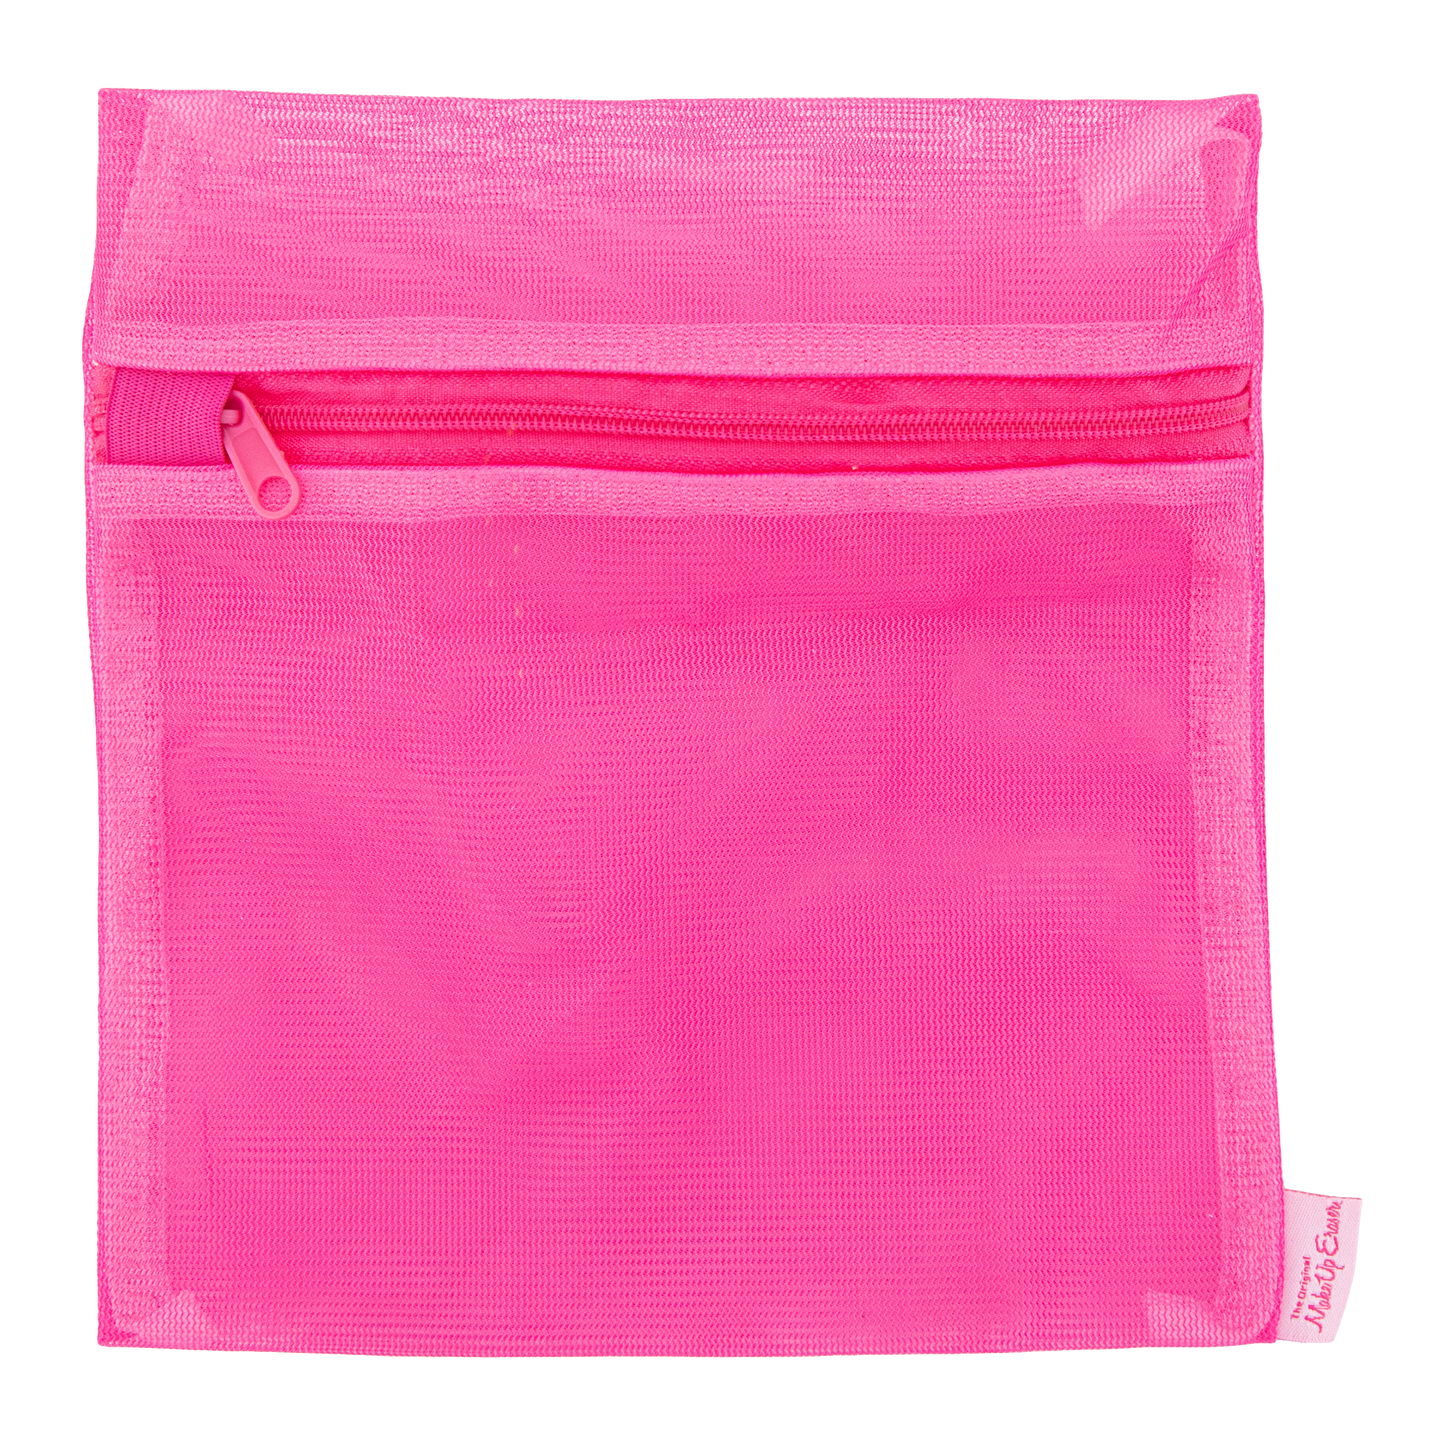 Original Pink MakeUp Eraser 7-Day Set